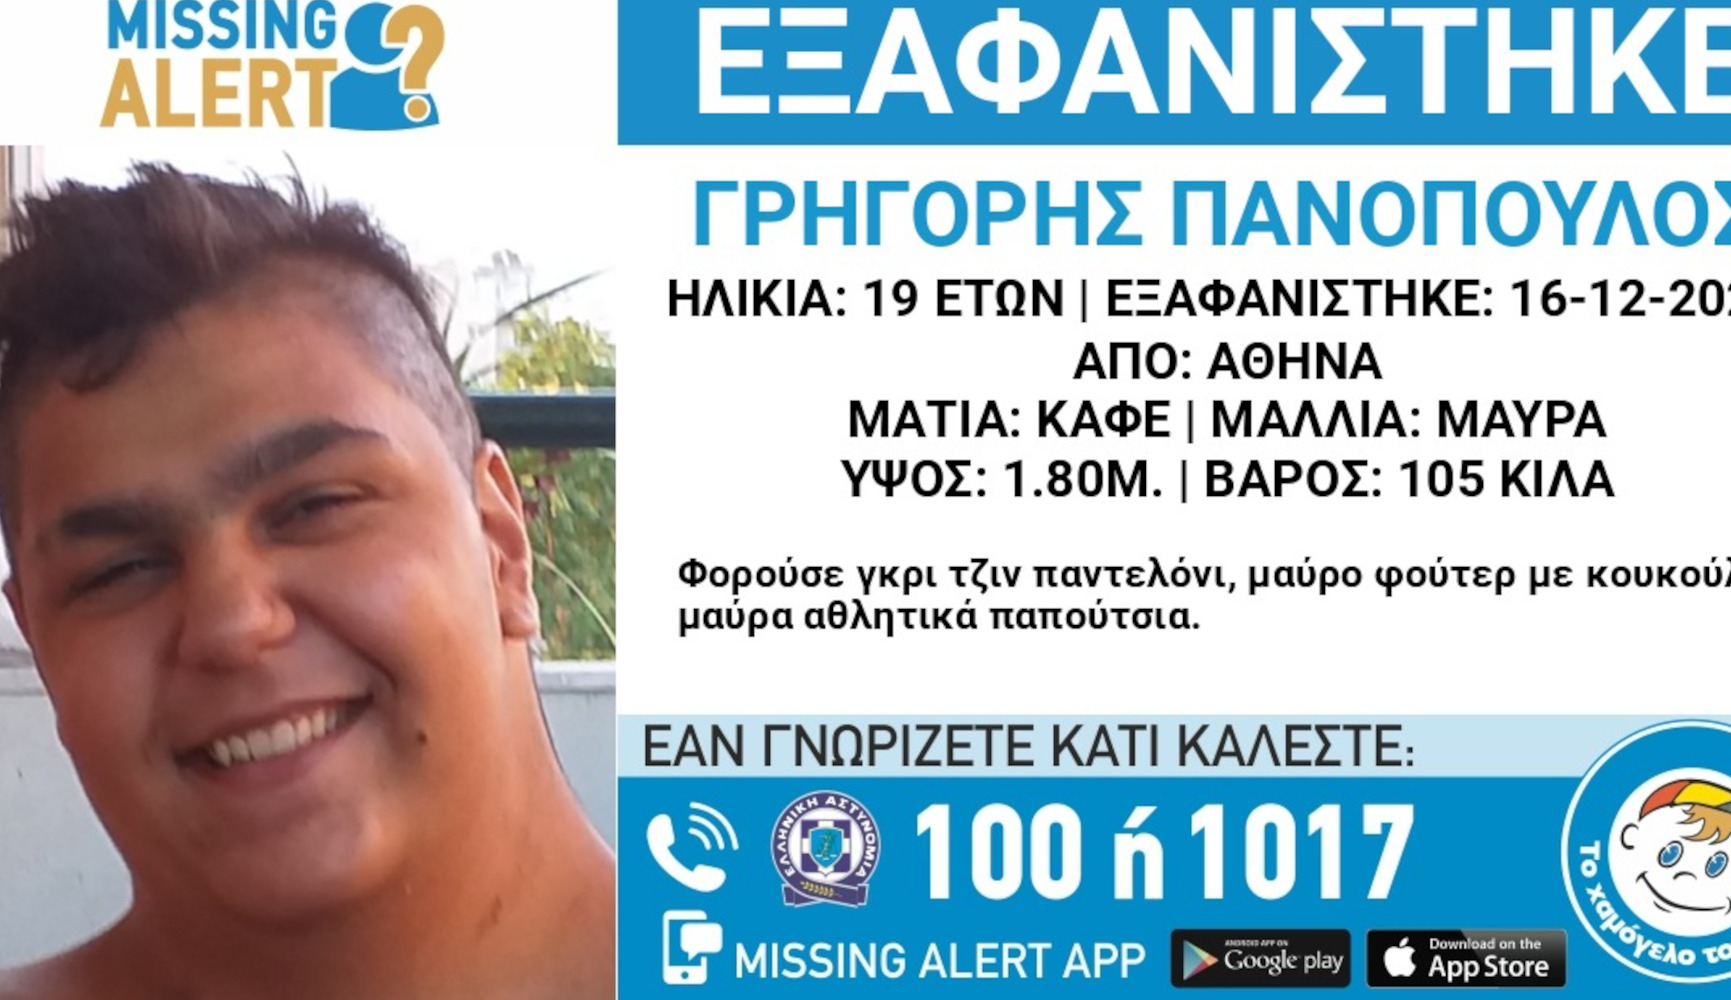 Συναγερμός για την εξαφάνιση του 19χρονου Γρηγόρη από την Αθήνα – Missing Alert από το Χαμόγελο του Παιδιού